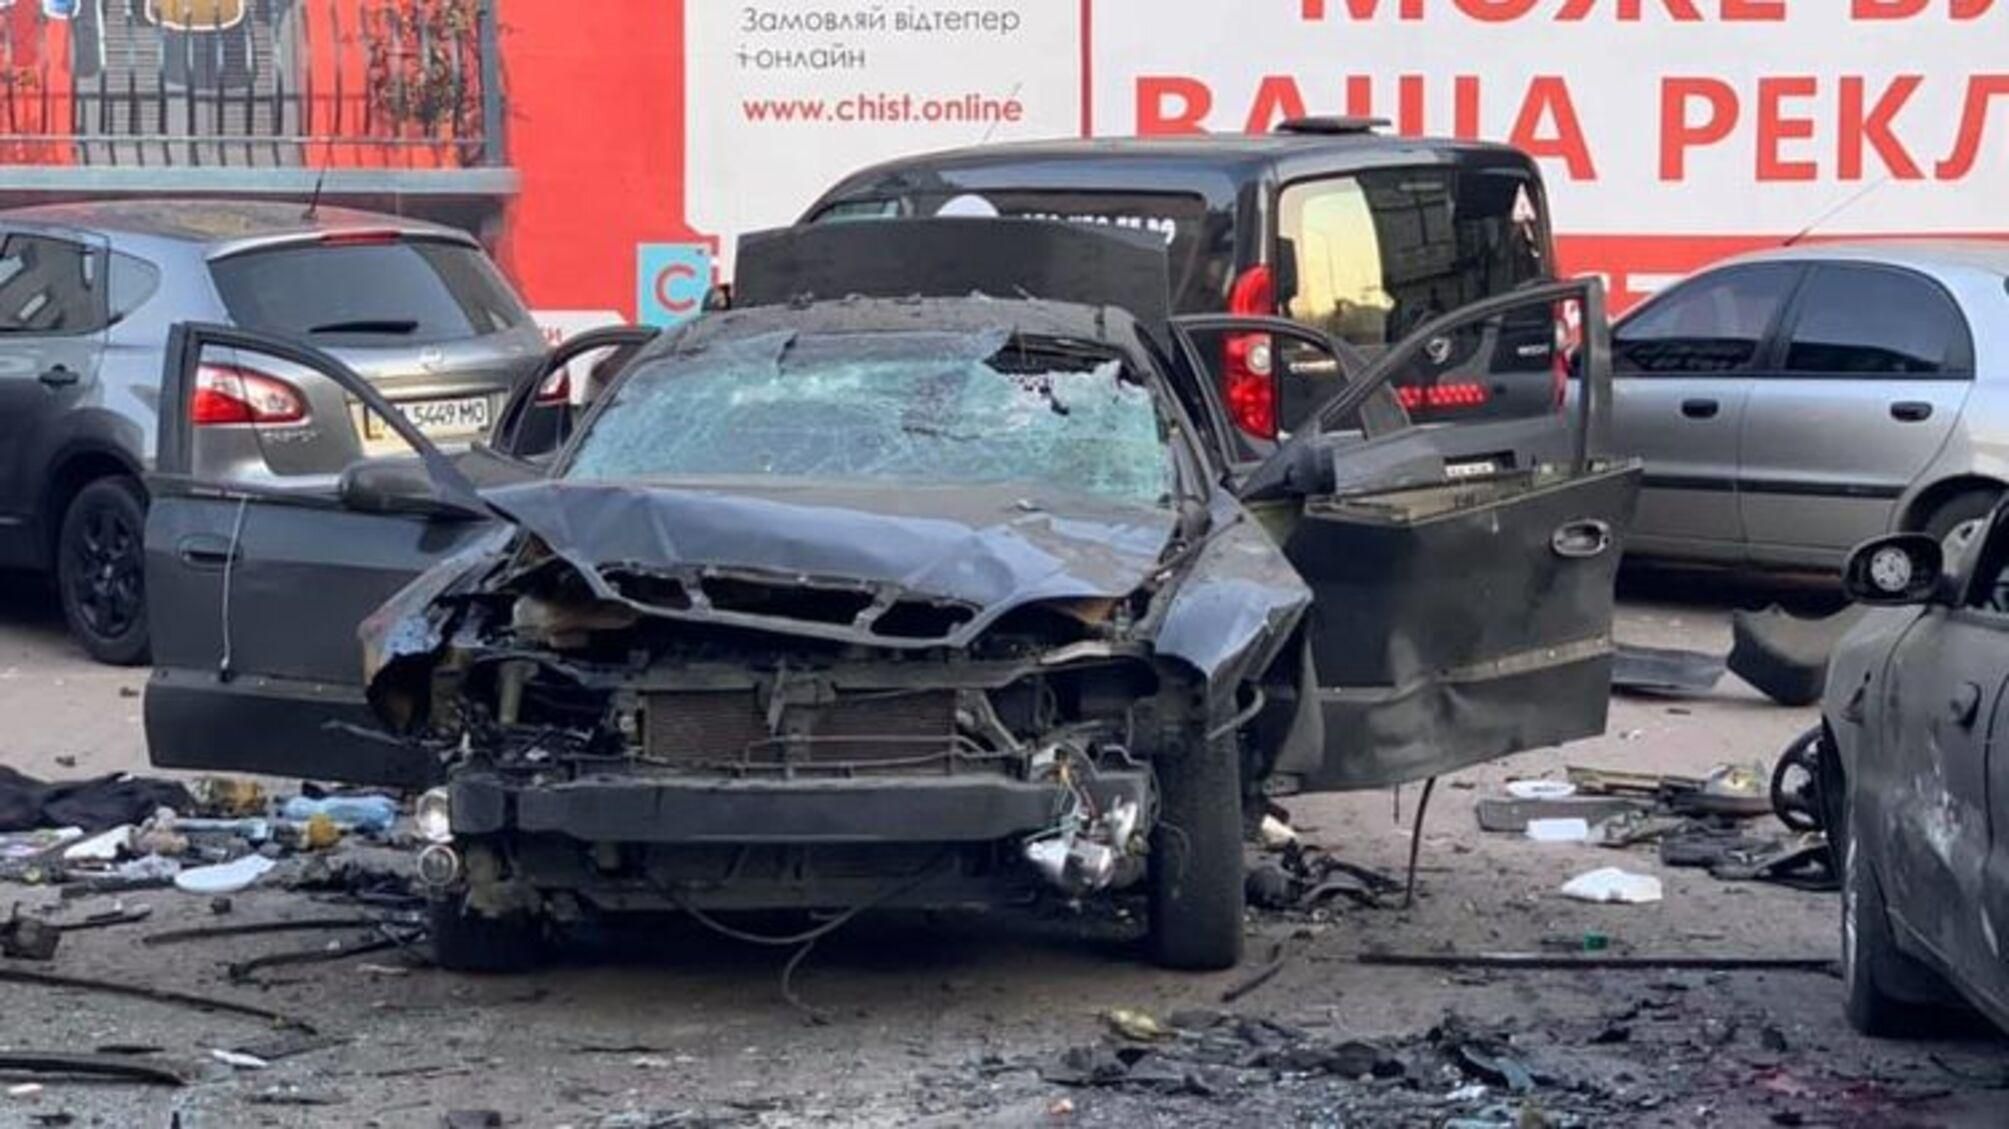 Росіян засудили за вибух авто розвідника в Києві 4 квітня 2019